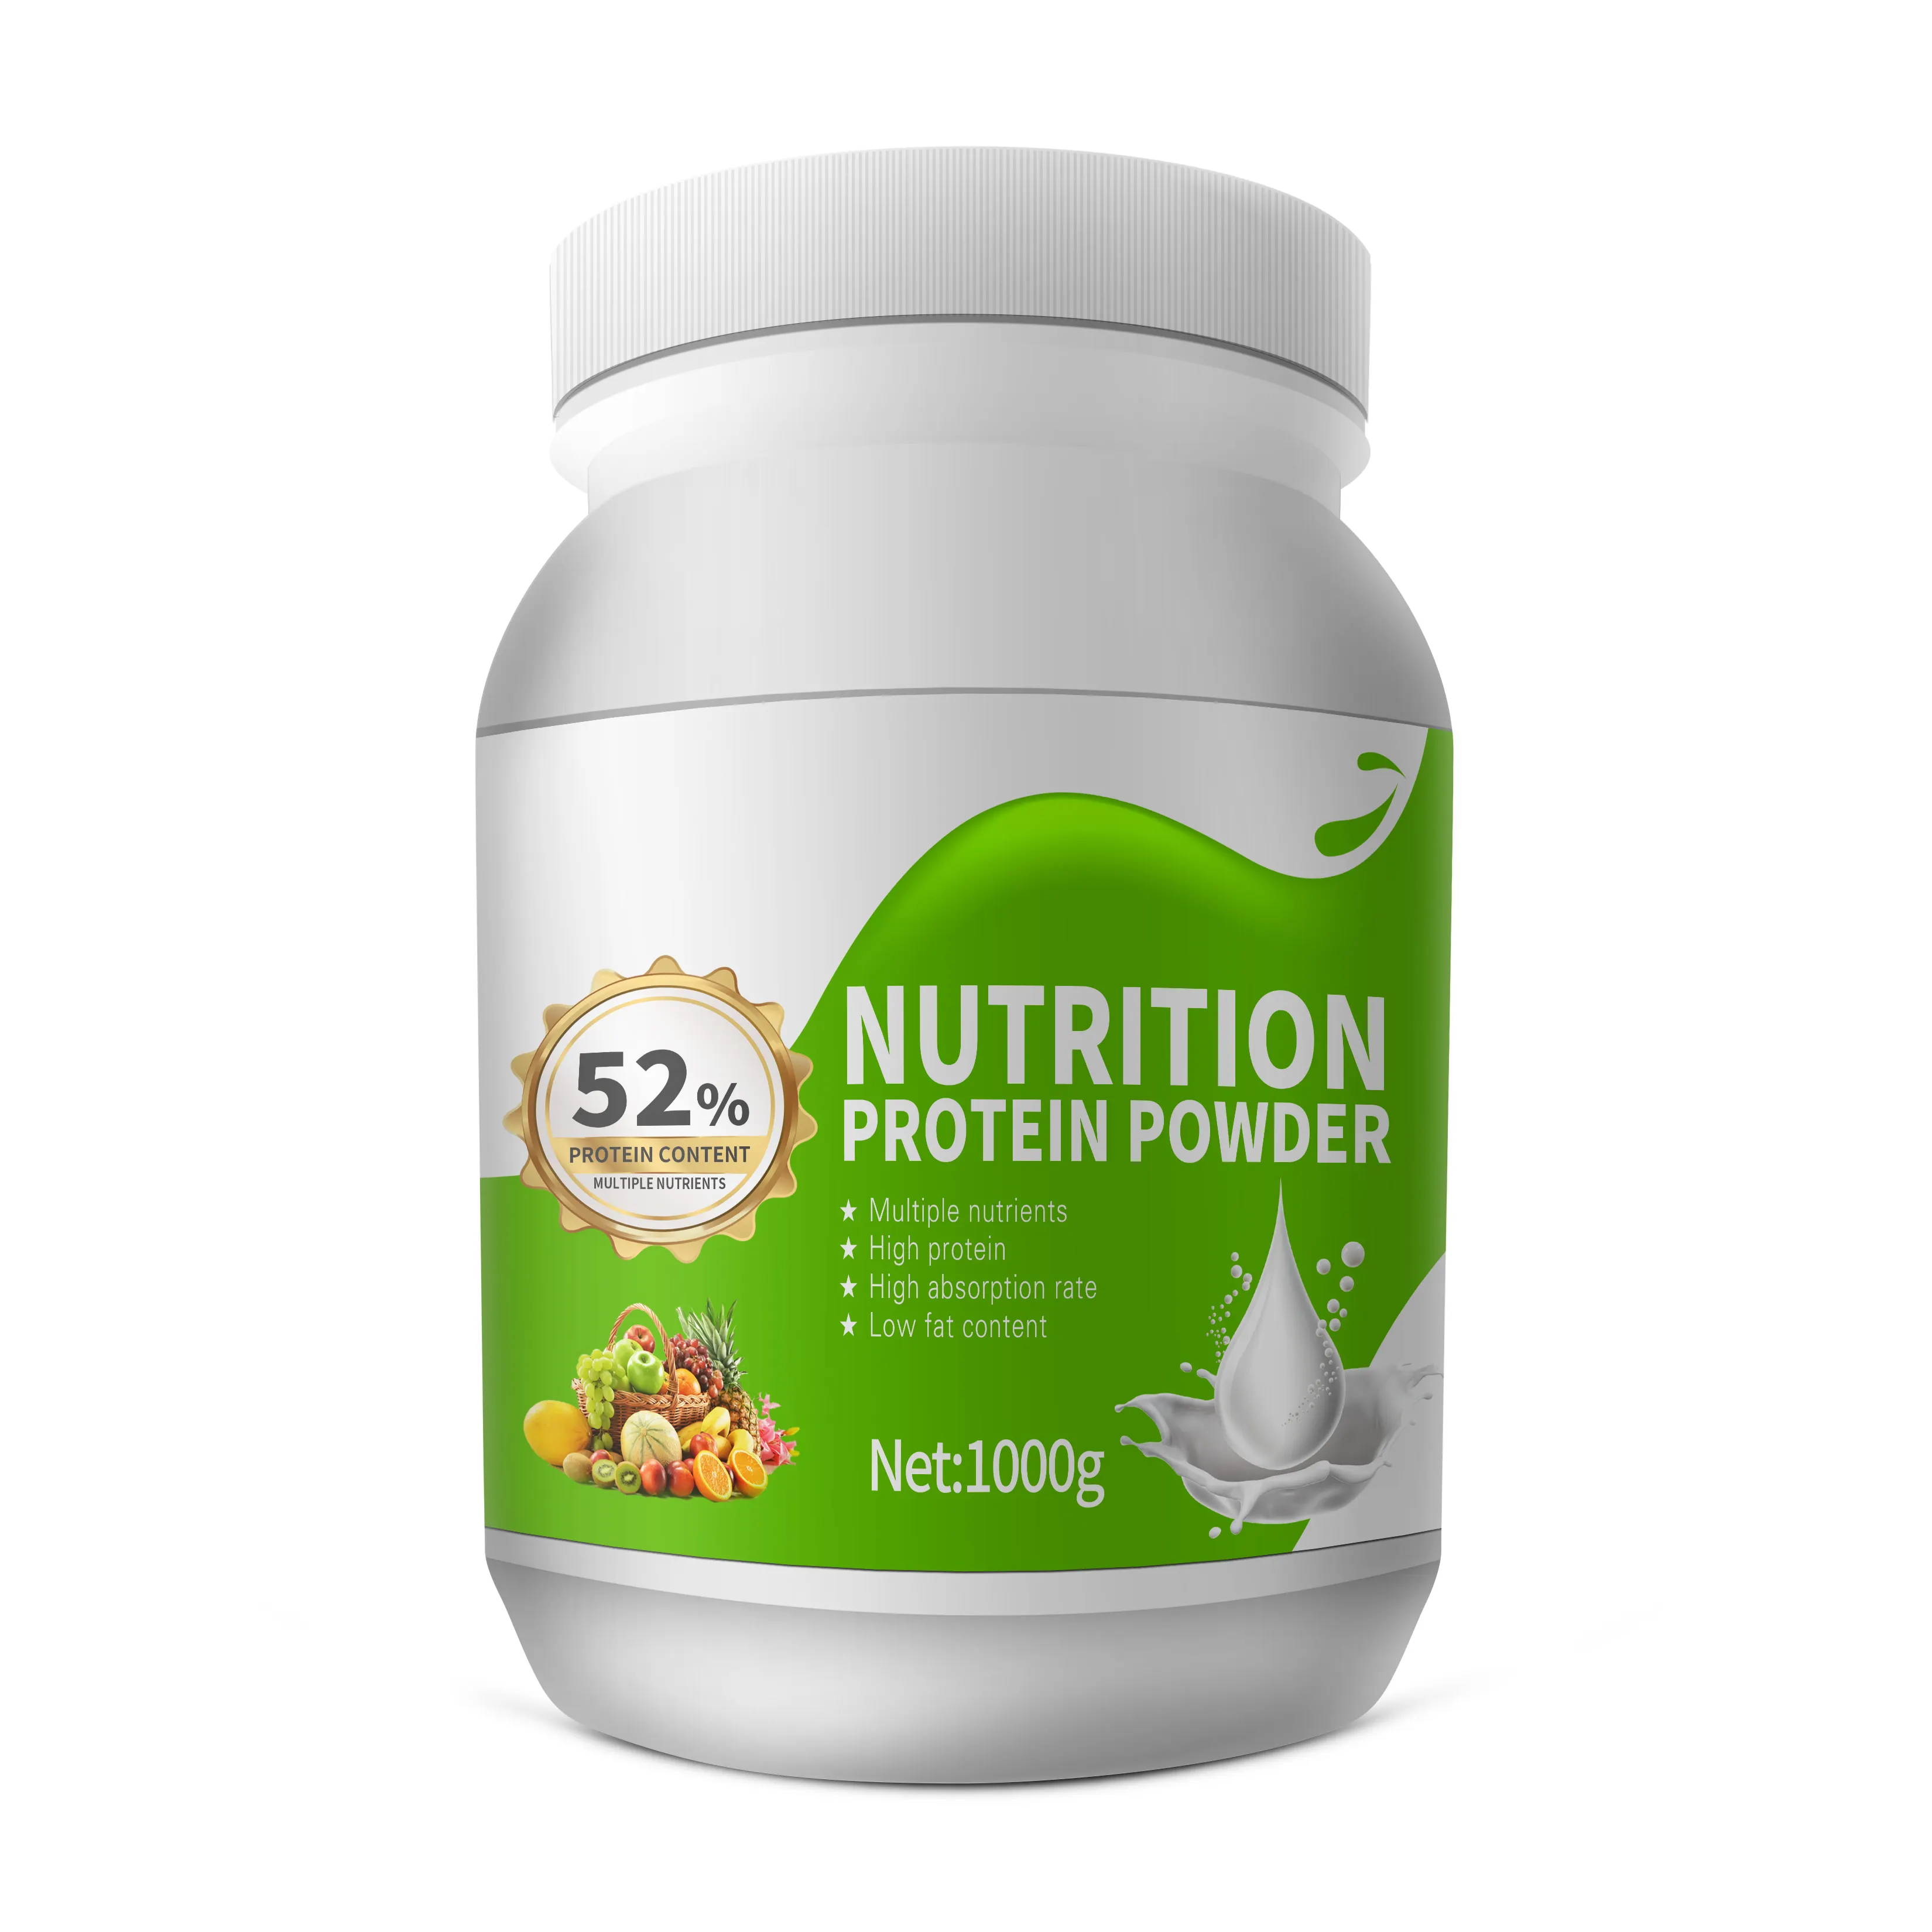 مسحوق بروتين غذائي للعضلات منخفض الدهون 1000 جرام مسحوق بروتين مصل الحليب لصحة الجسم